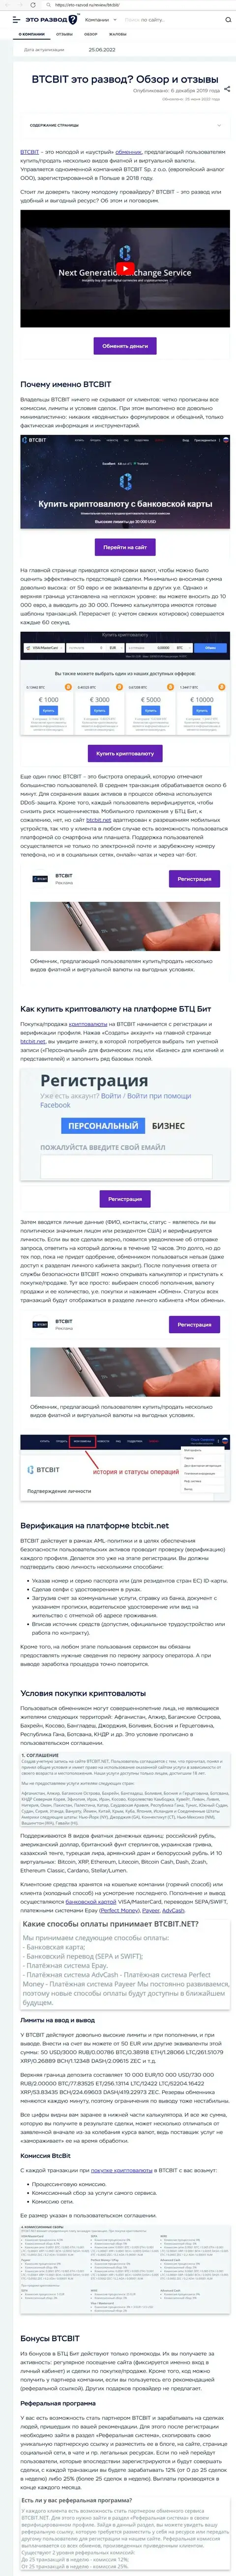 Обзор и условия для сотрудничества обменки BTCBit Net в обзоре на сайте eto-razvod ru